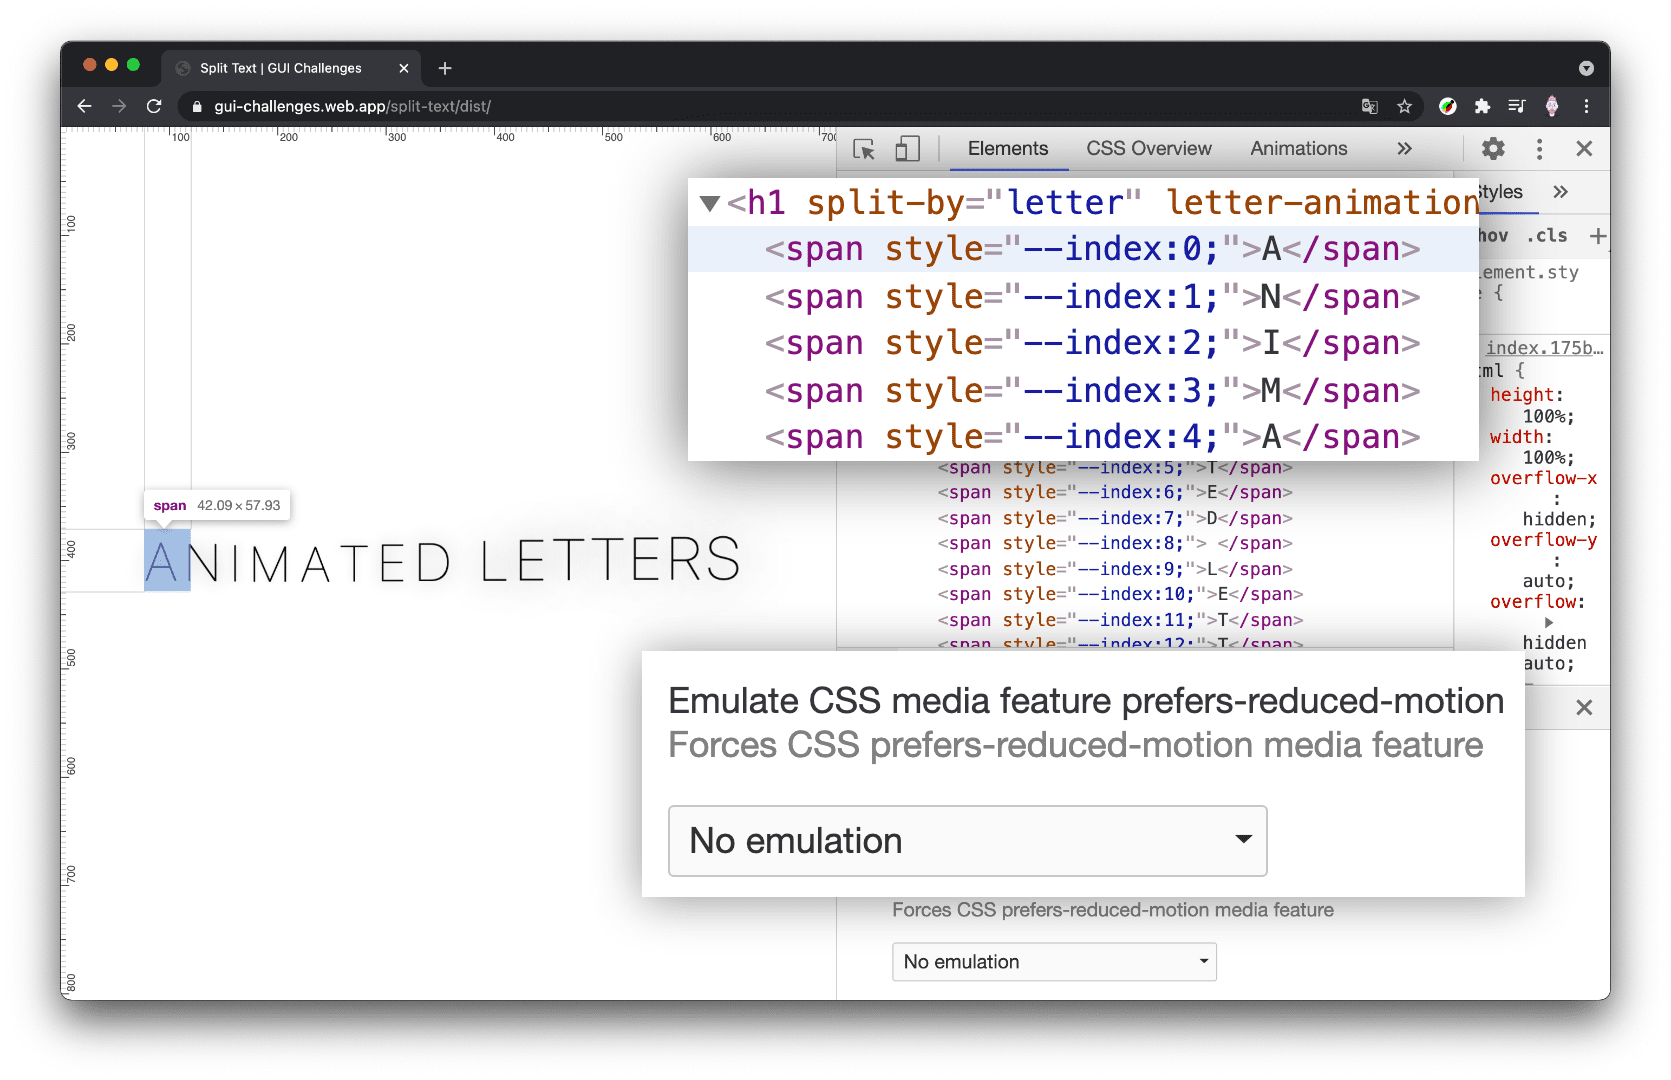 צילום מסך של כלי הפיתוח של Chrome כשחלונית הרכיבים פתוחה והתנועה המוקטנת מוגדרת ל &#39;הקטנה&#39;, וה-h1 מוצג ללא פיצול